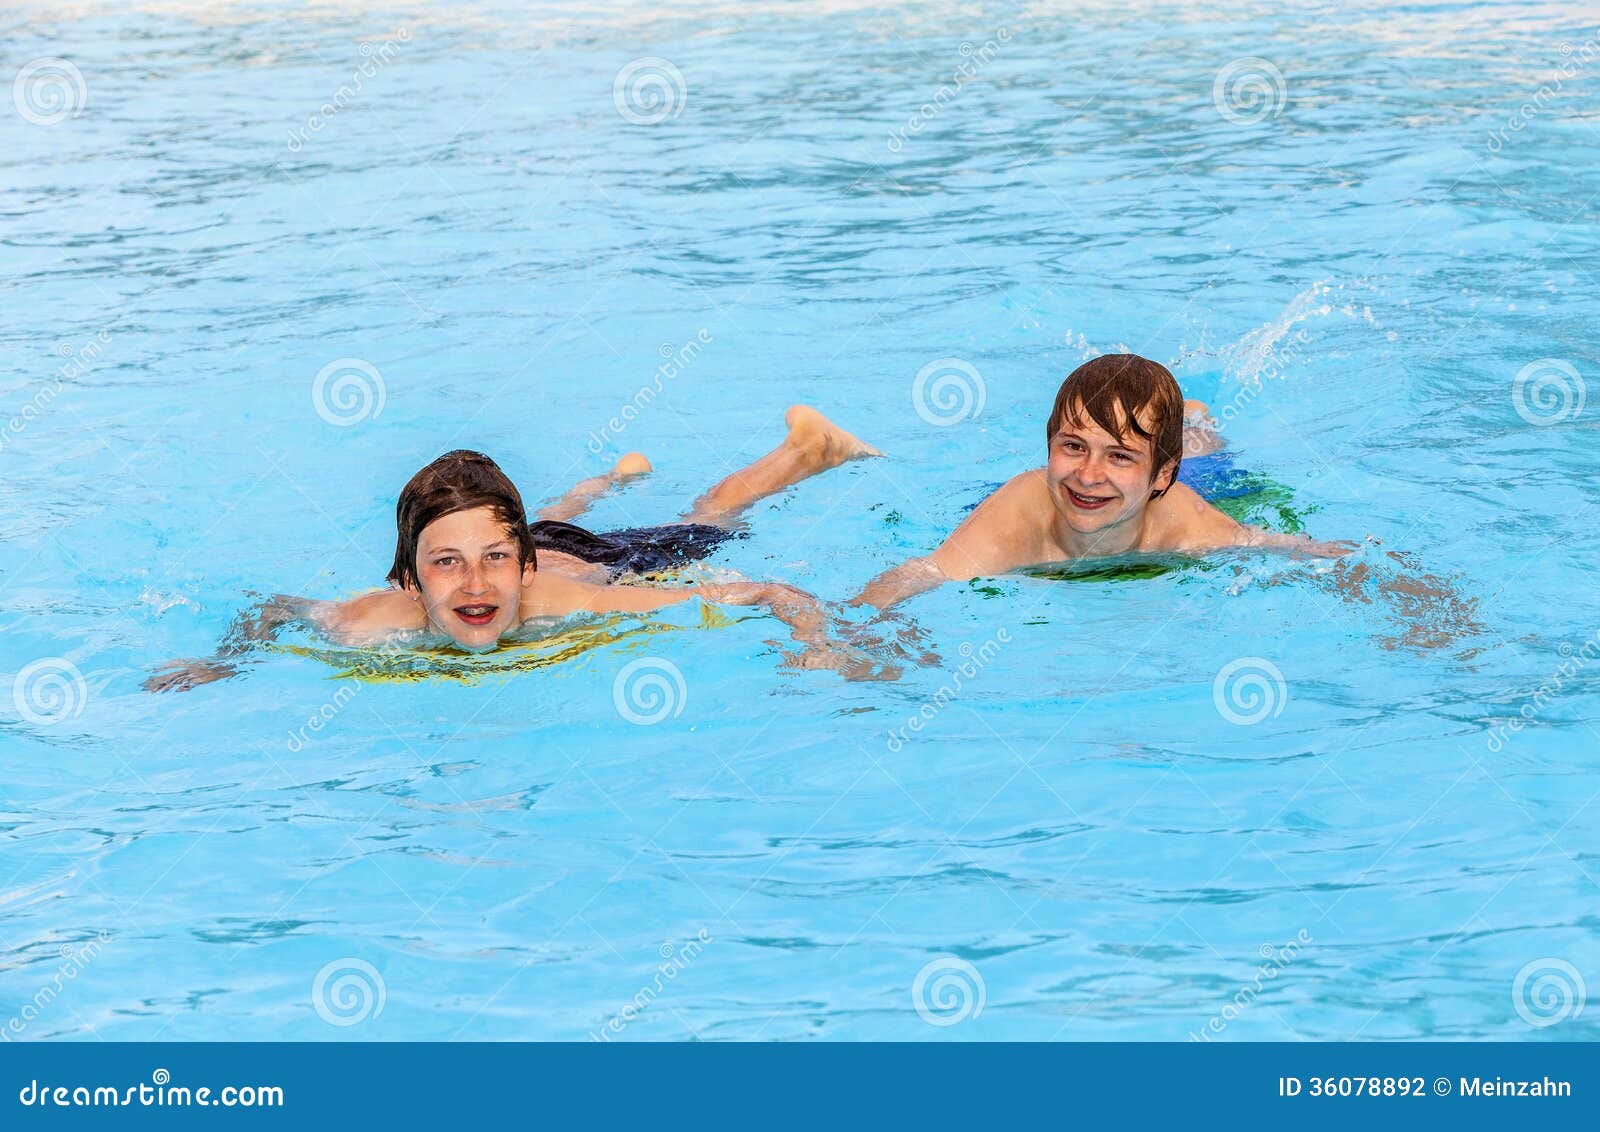 Swim friends. Два друга в бассейне. Друзья плавают. Купание с друзьями. Купаются в бассейне друзья.